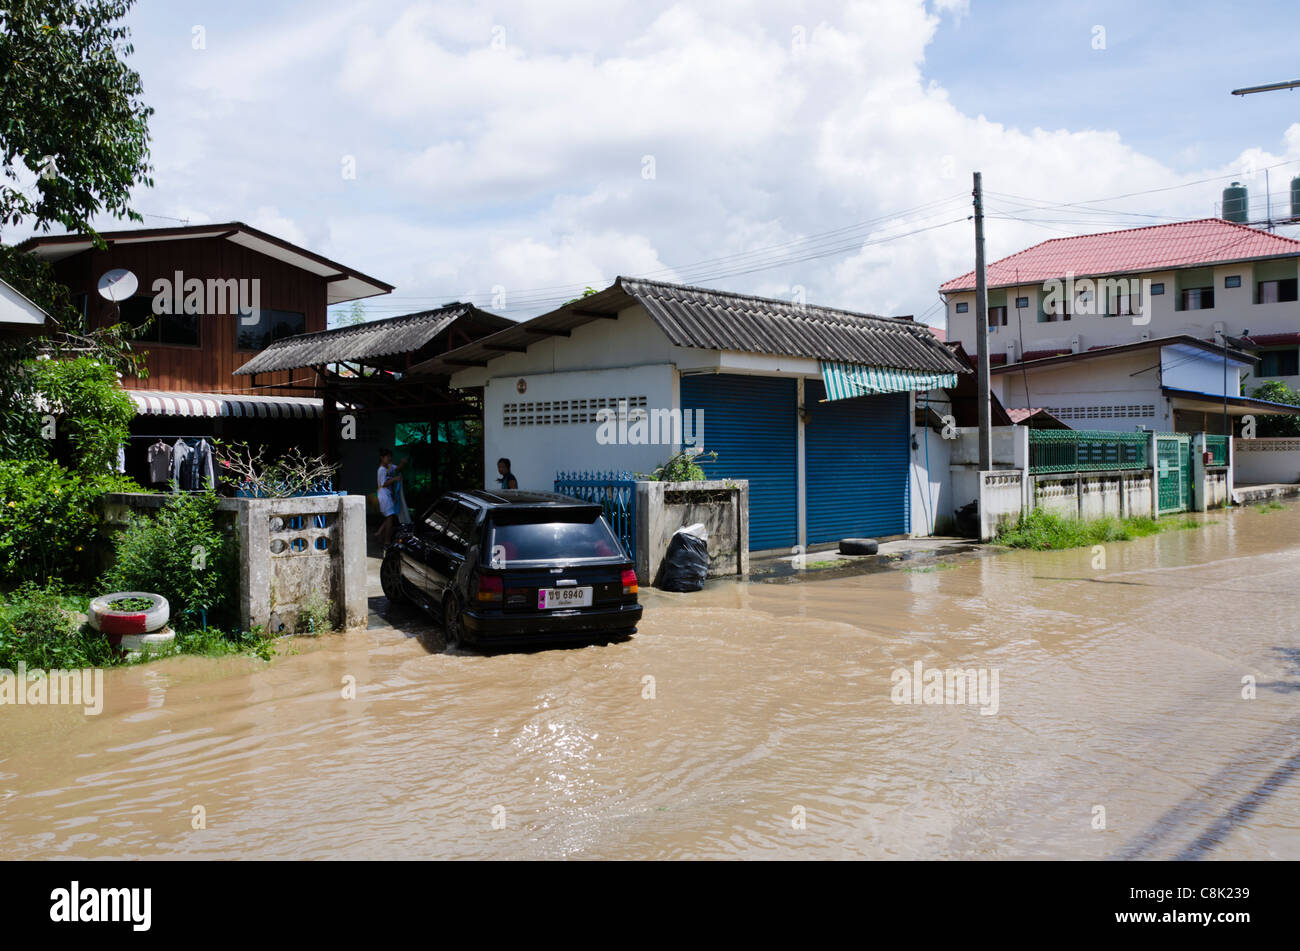 Location se transforme en allée de maison à partir de la rue inondée à Koh Klang à Chiang Mai Thaïlande Banque D'Images